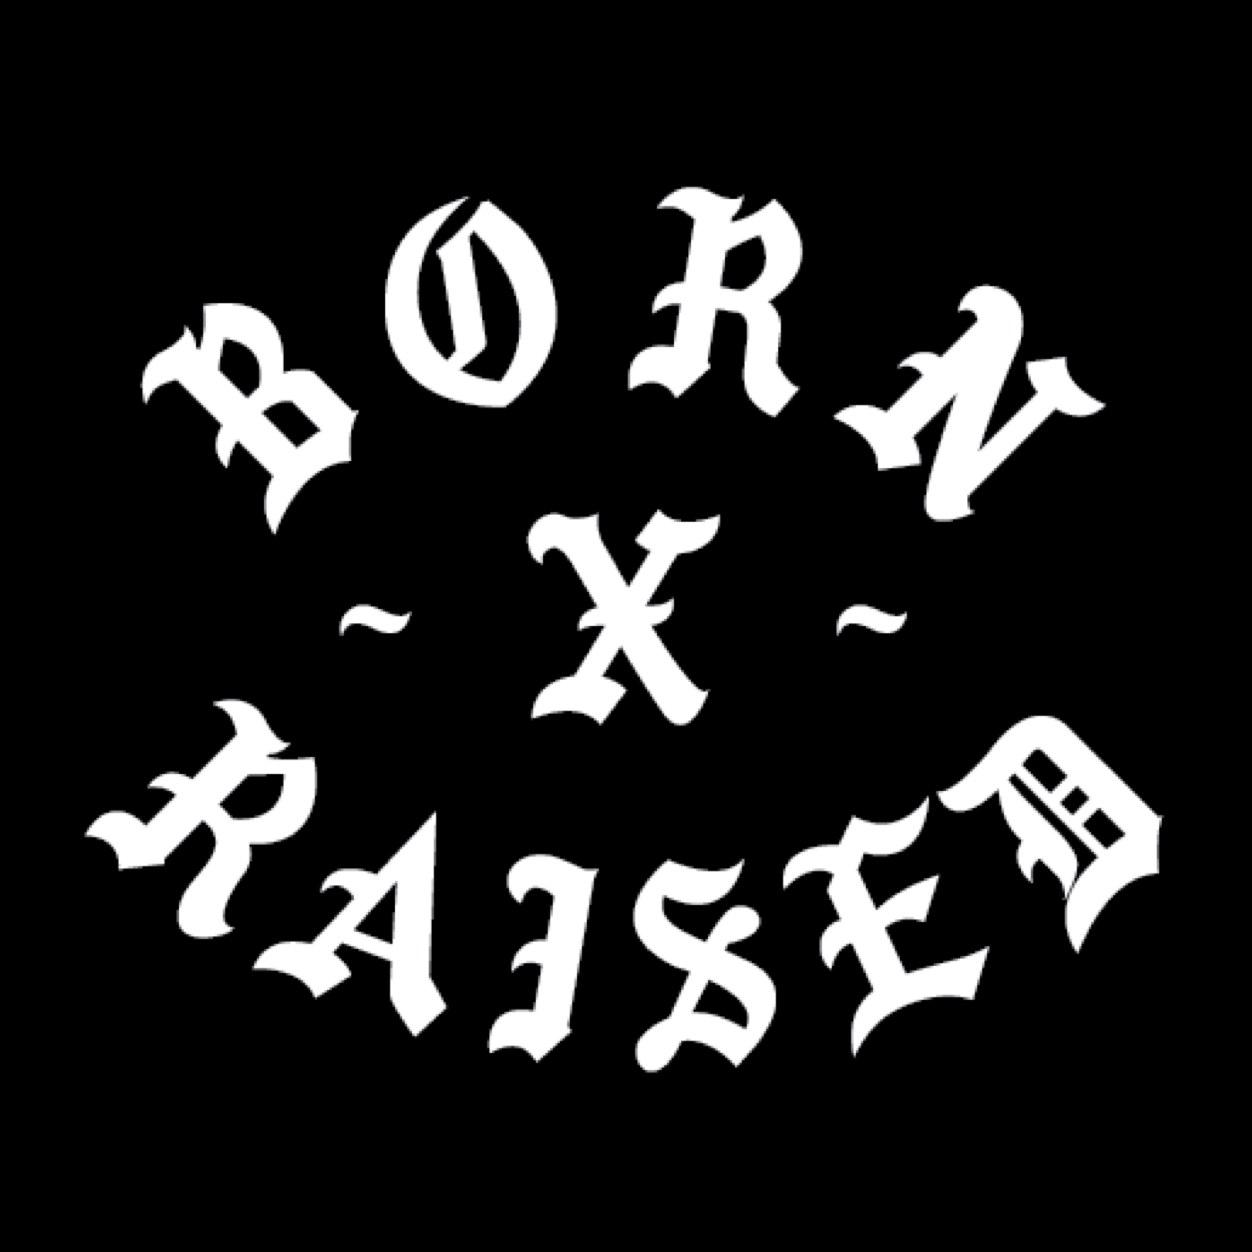 Born X Raised